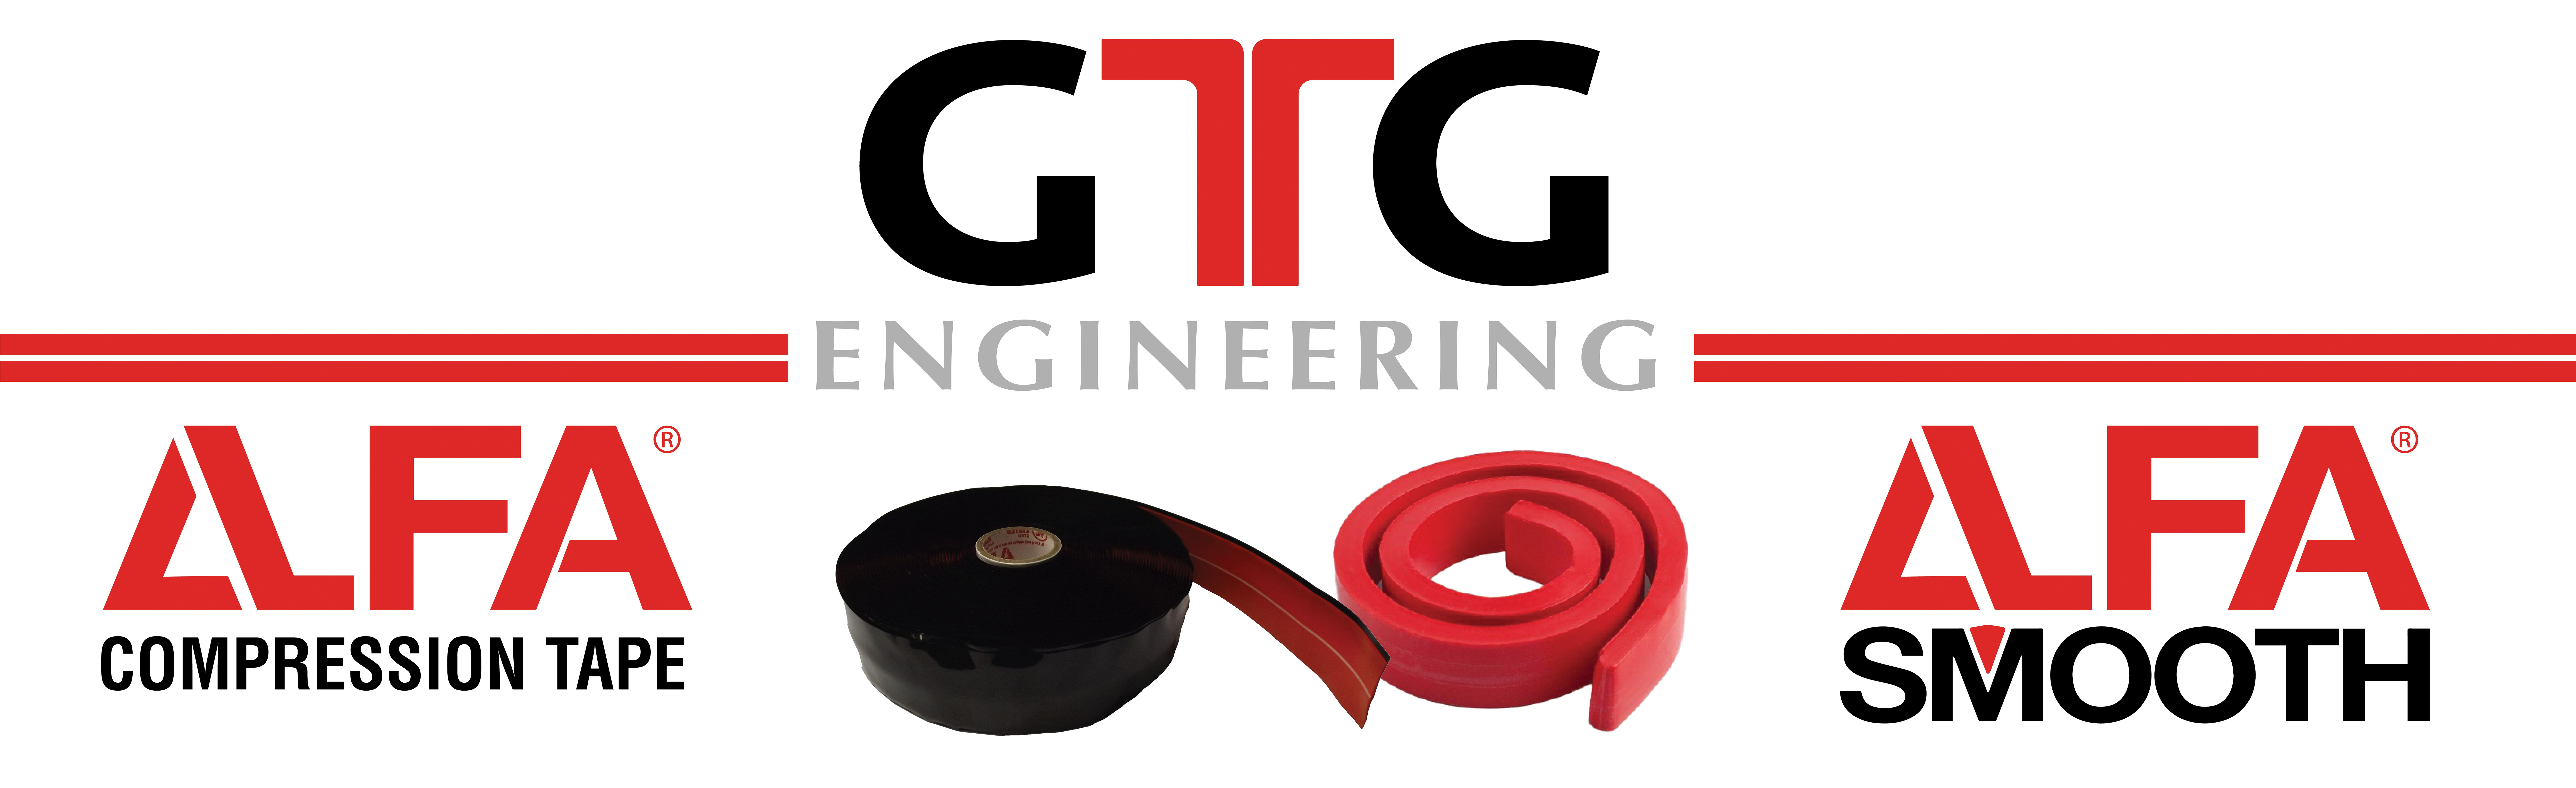 GTG Engineering